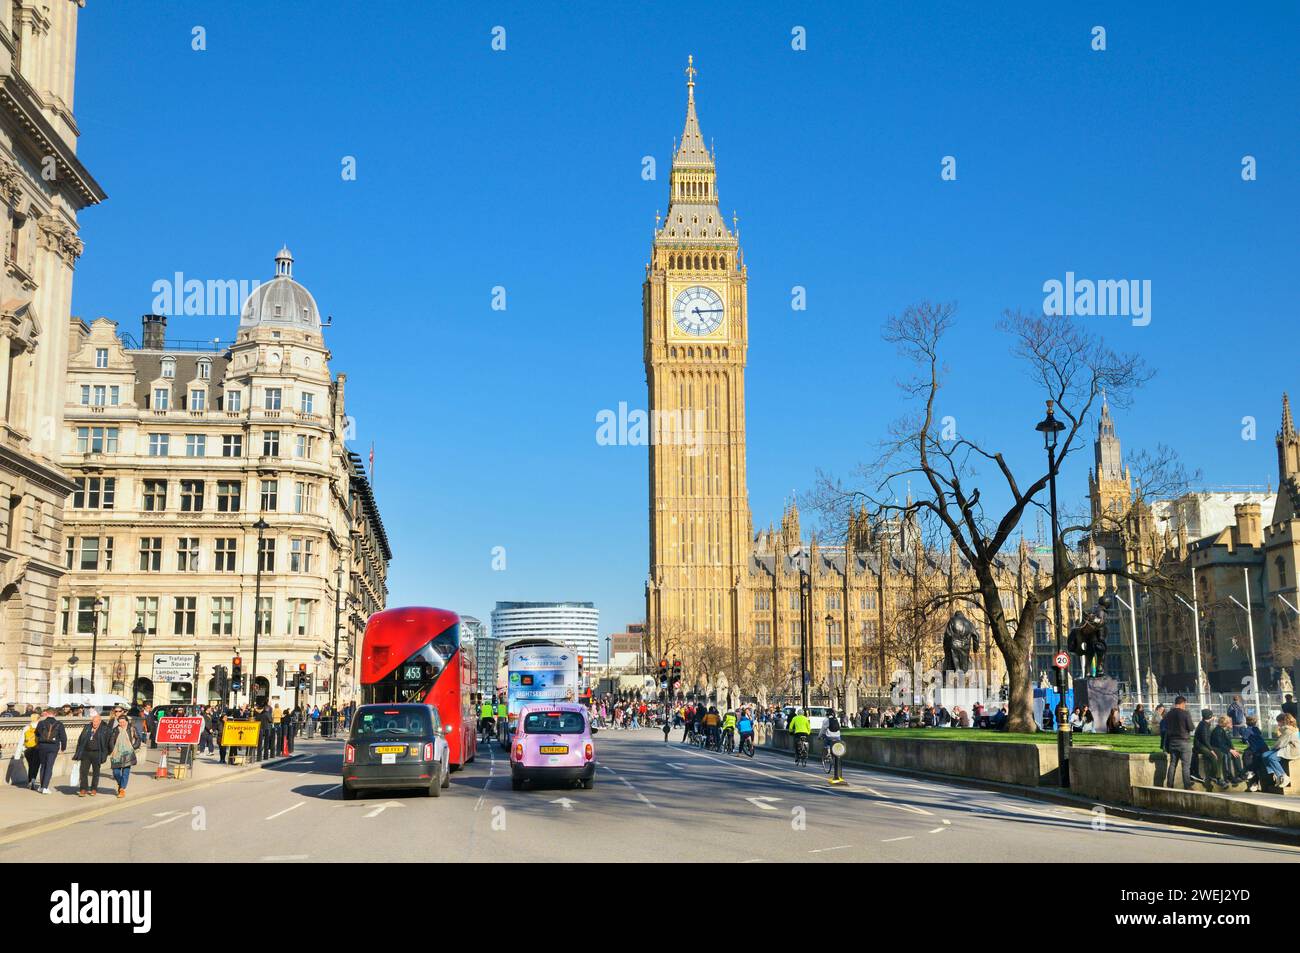 Blick von der Great George Street in Richtung Elizabeth Tower, allgemein bekannt als Big Ben, mit Houses of Parliament, City of Westminster, Zentrum von London, Großbritannien Stockfoto